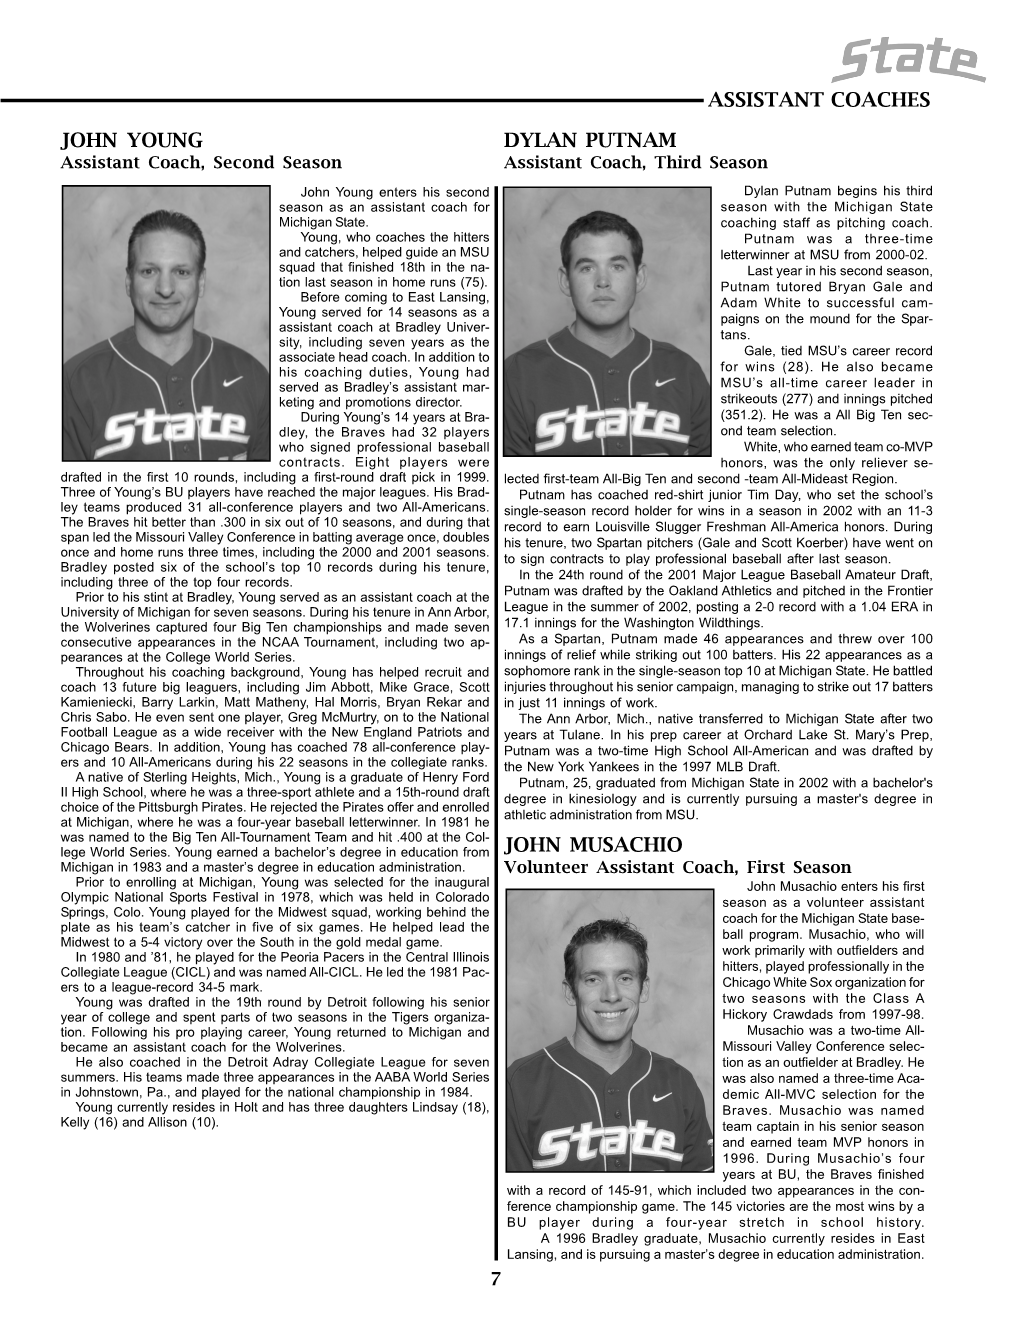 2005 Baseball Media Guide 7-18